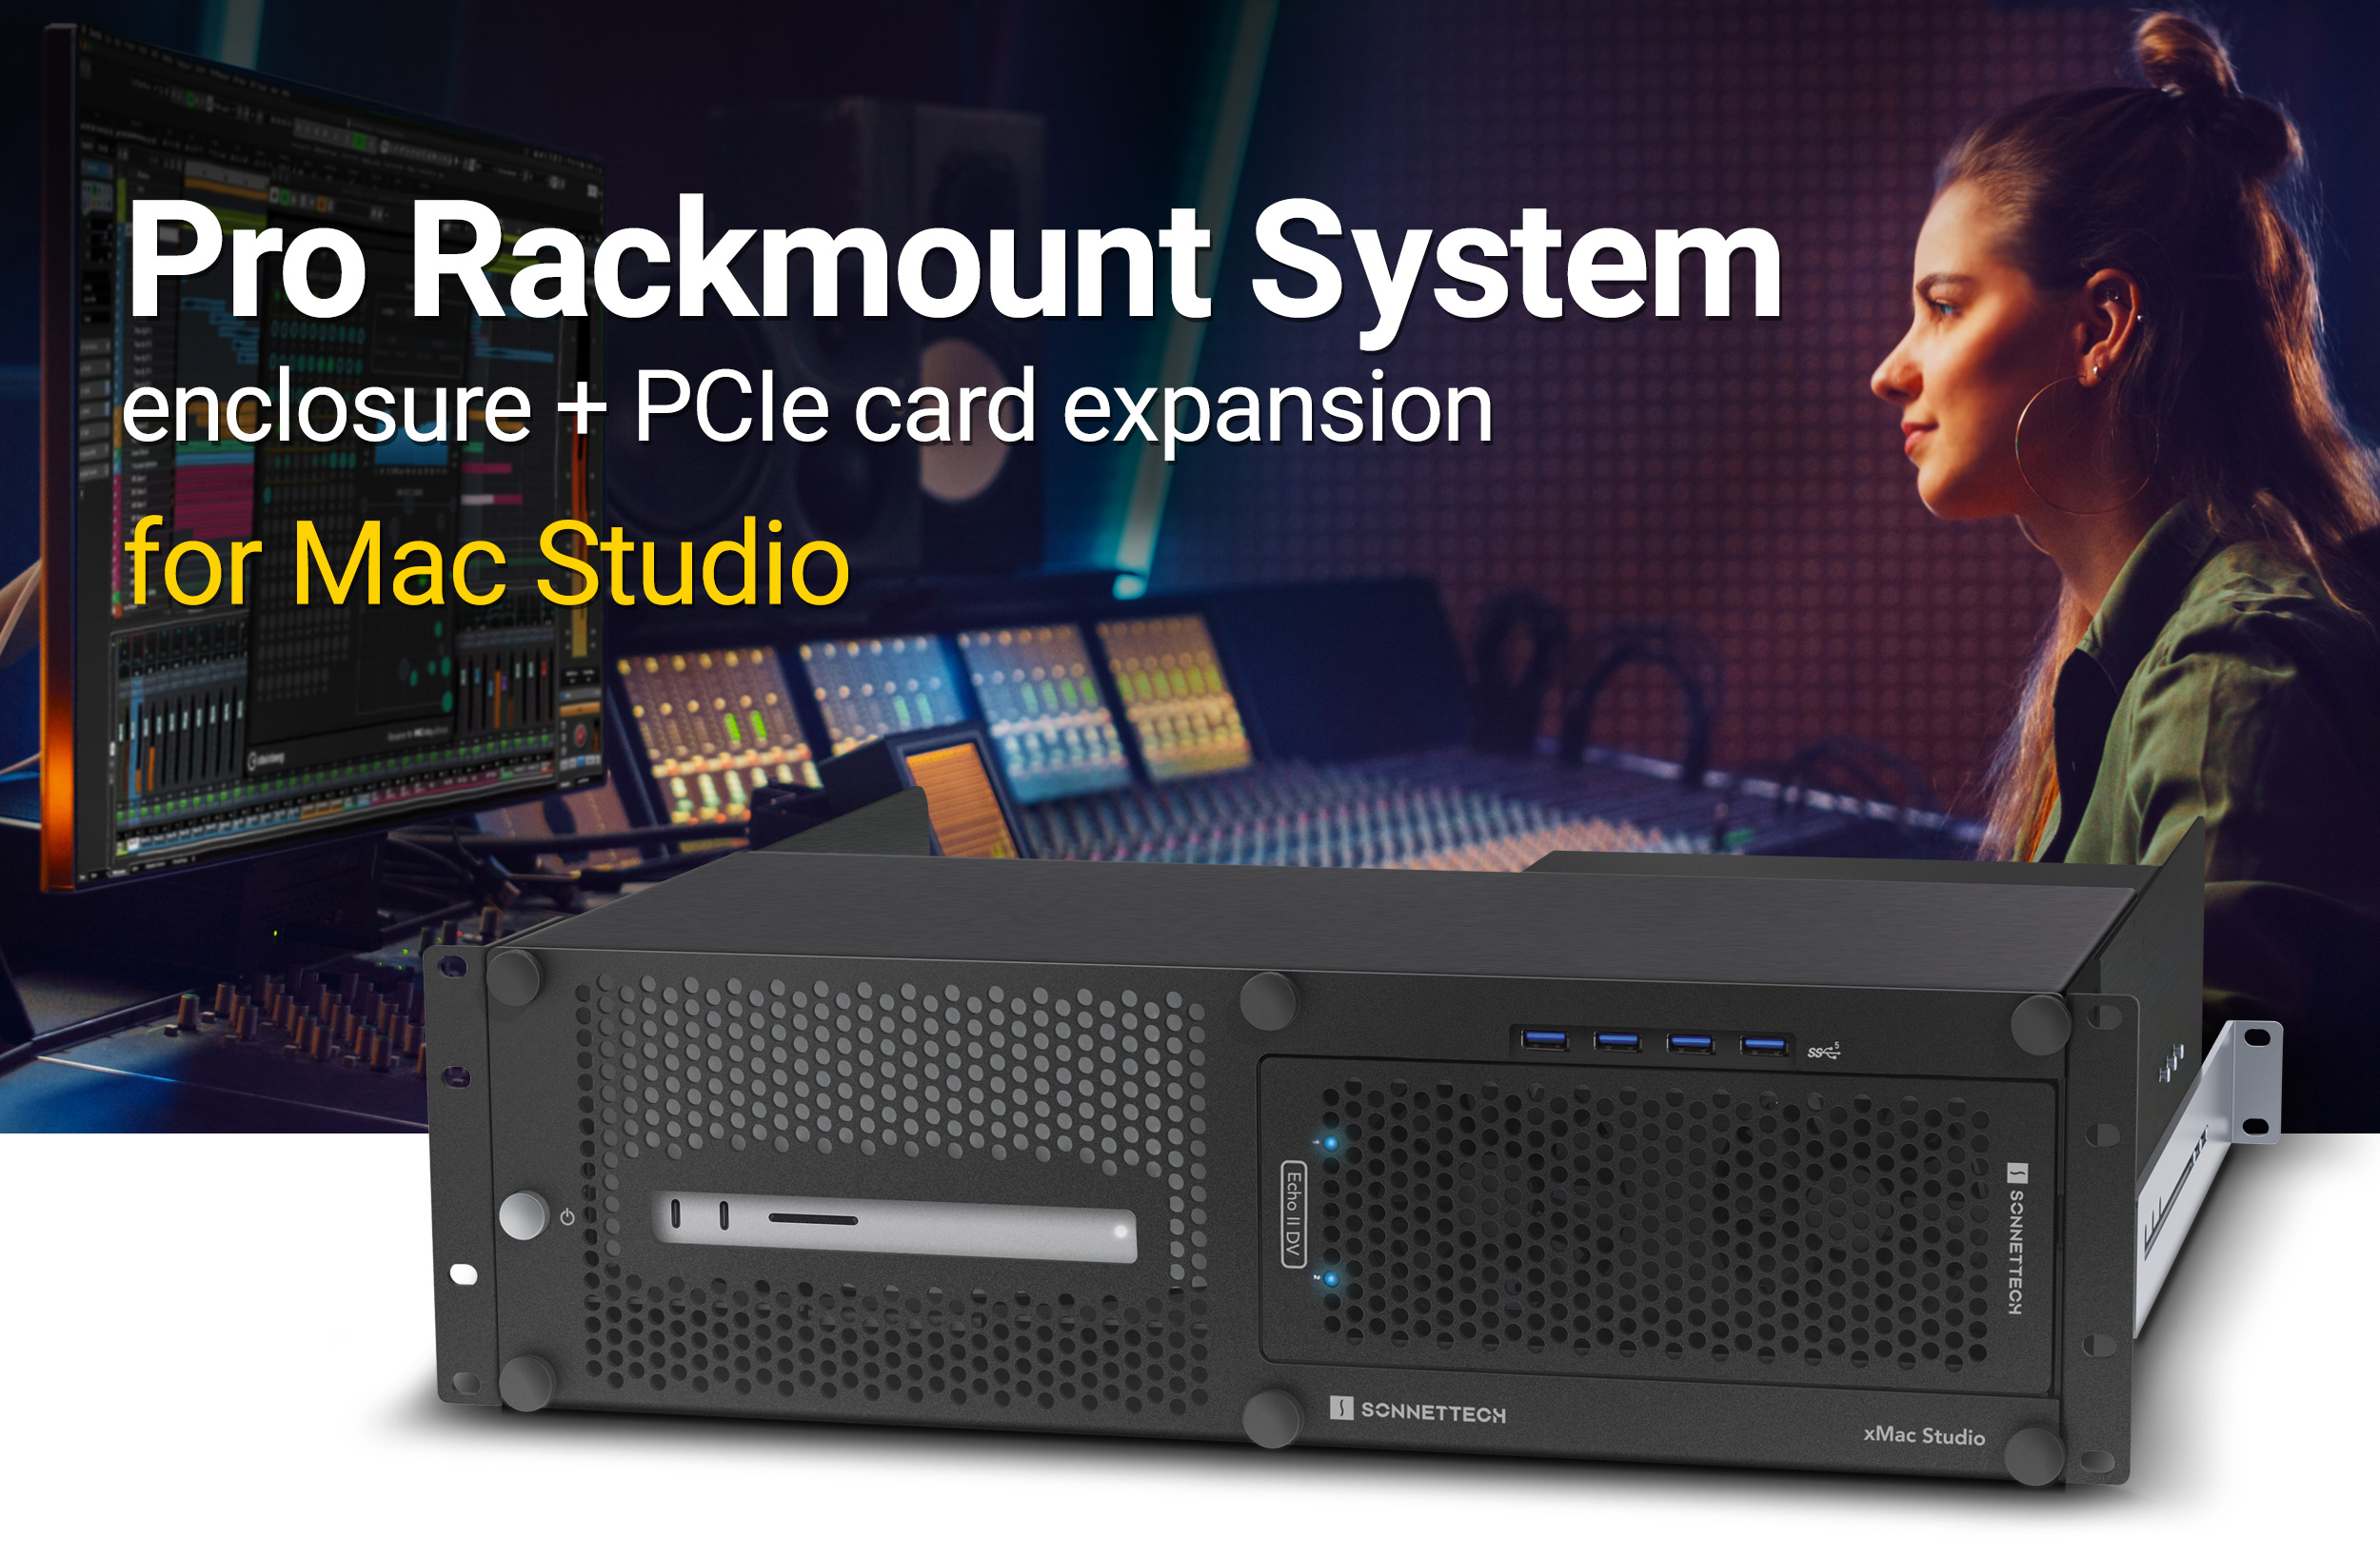 RackMac Studio - Pro Rackmount Solution for Mac Studio